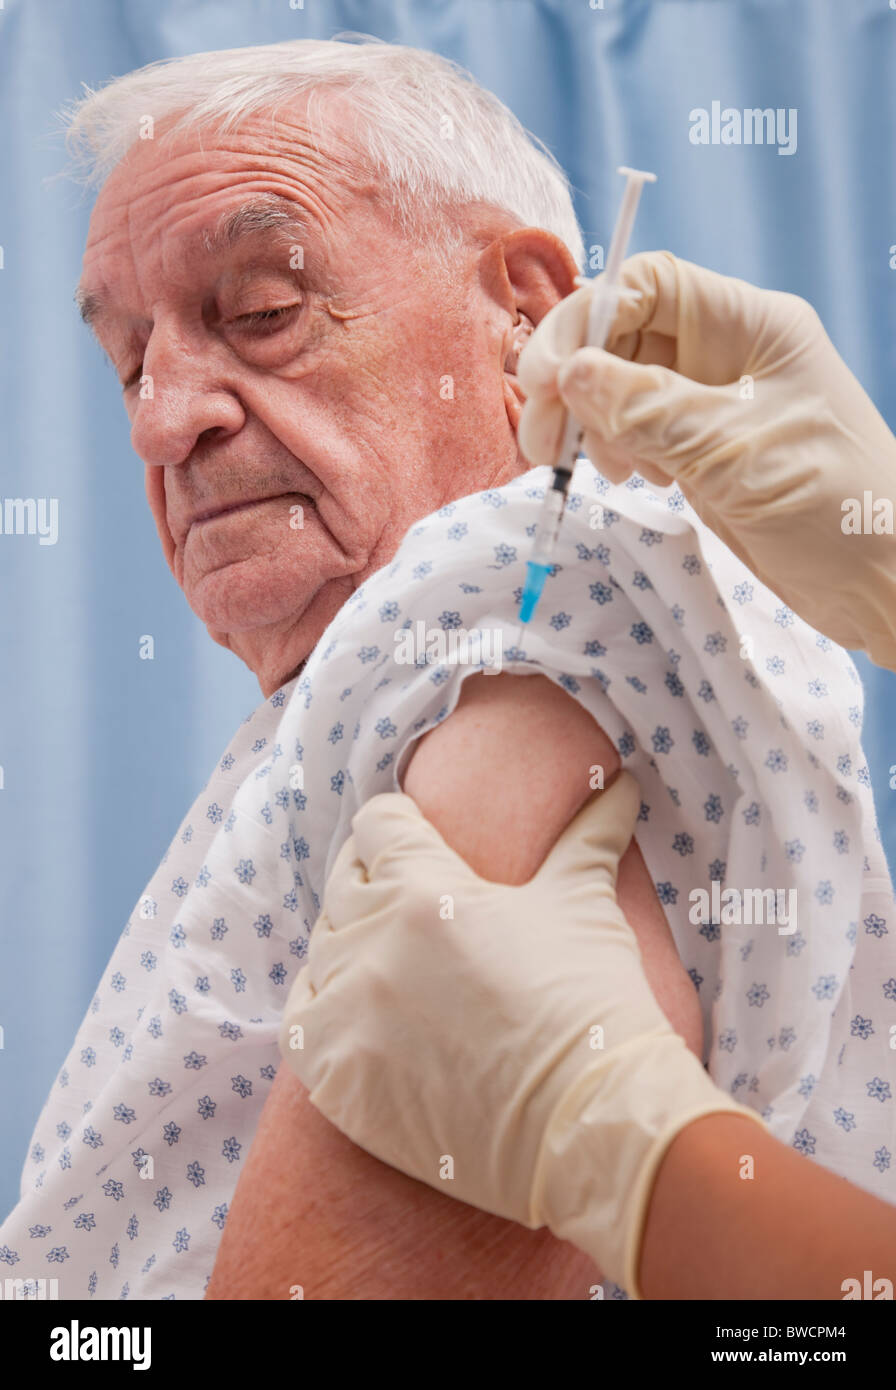 USA, Illinois, Metamora, Senior man receiving injection Stock Photo